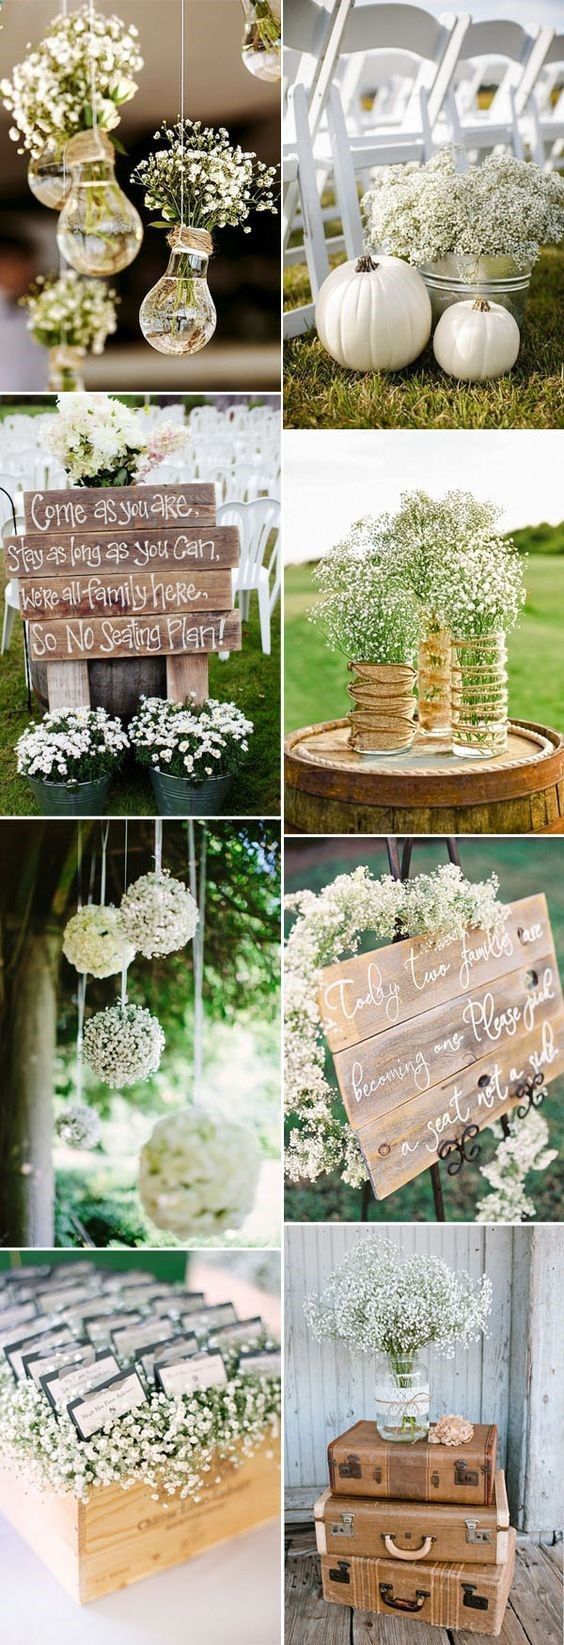 Top 35 Outdoor Backyard Garden Wedding Ideas -   17 wedding Simple chic ideas